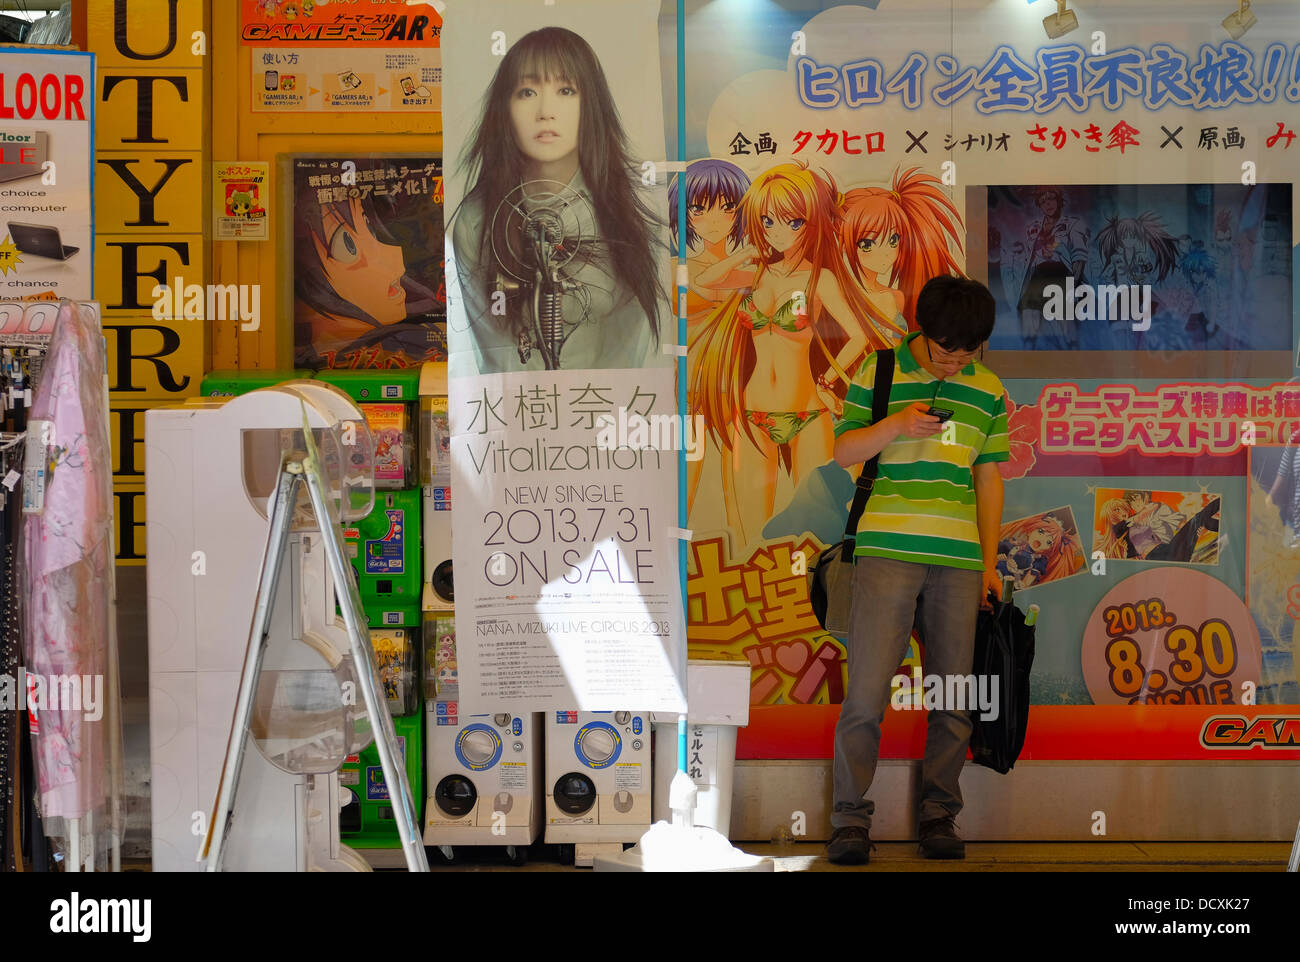 Akihabara store entrance Stock Photo